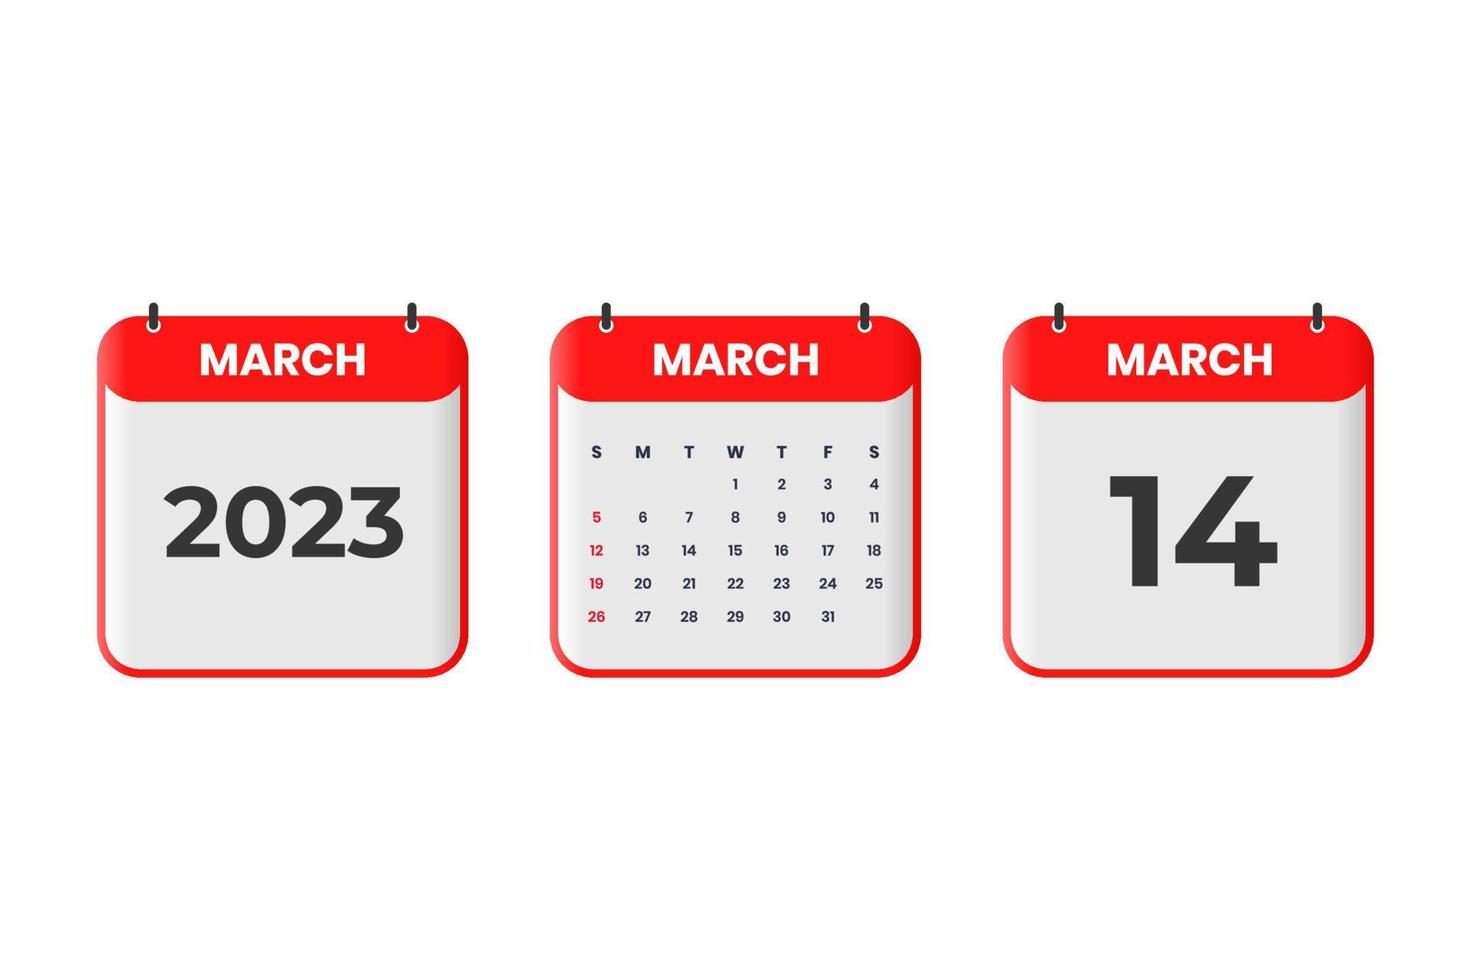 Mars 2023 kalender design. 14:e Mars 2023 kalender ikon för schema, utnämning, Viktig datum begrepp vektor